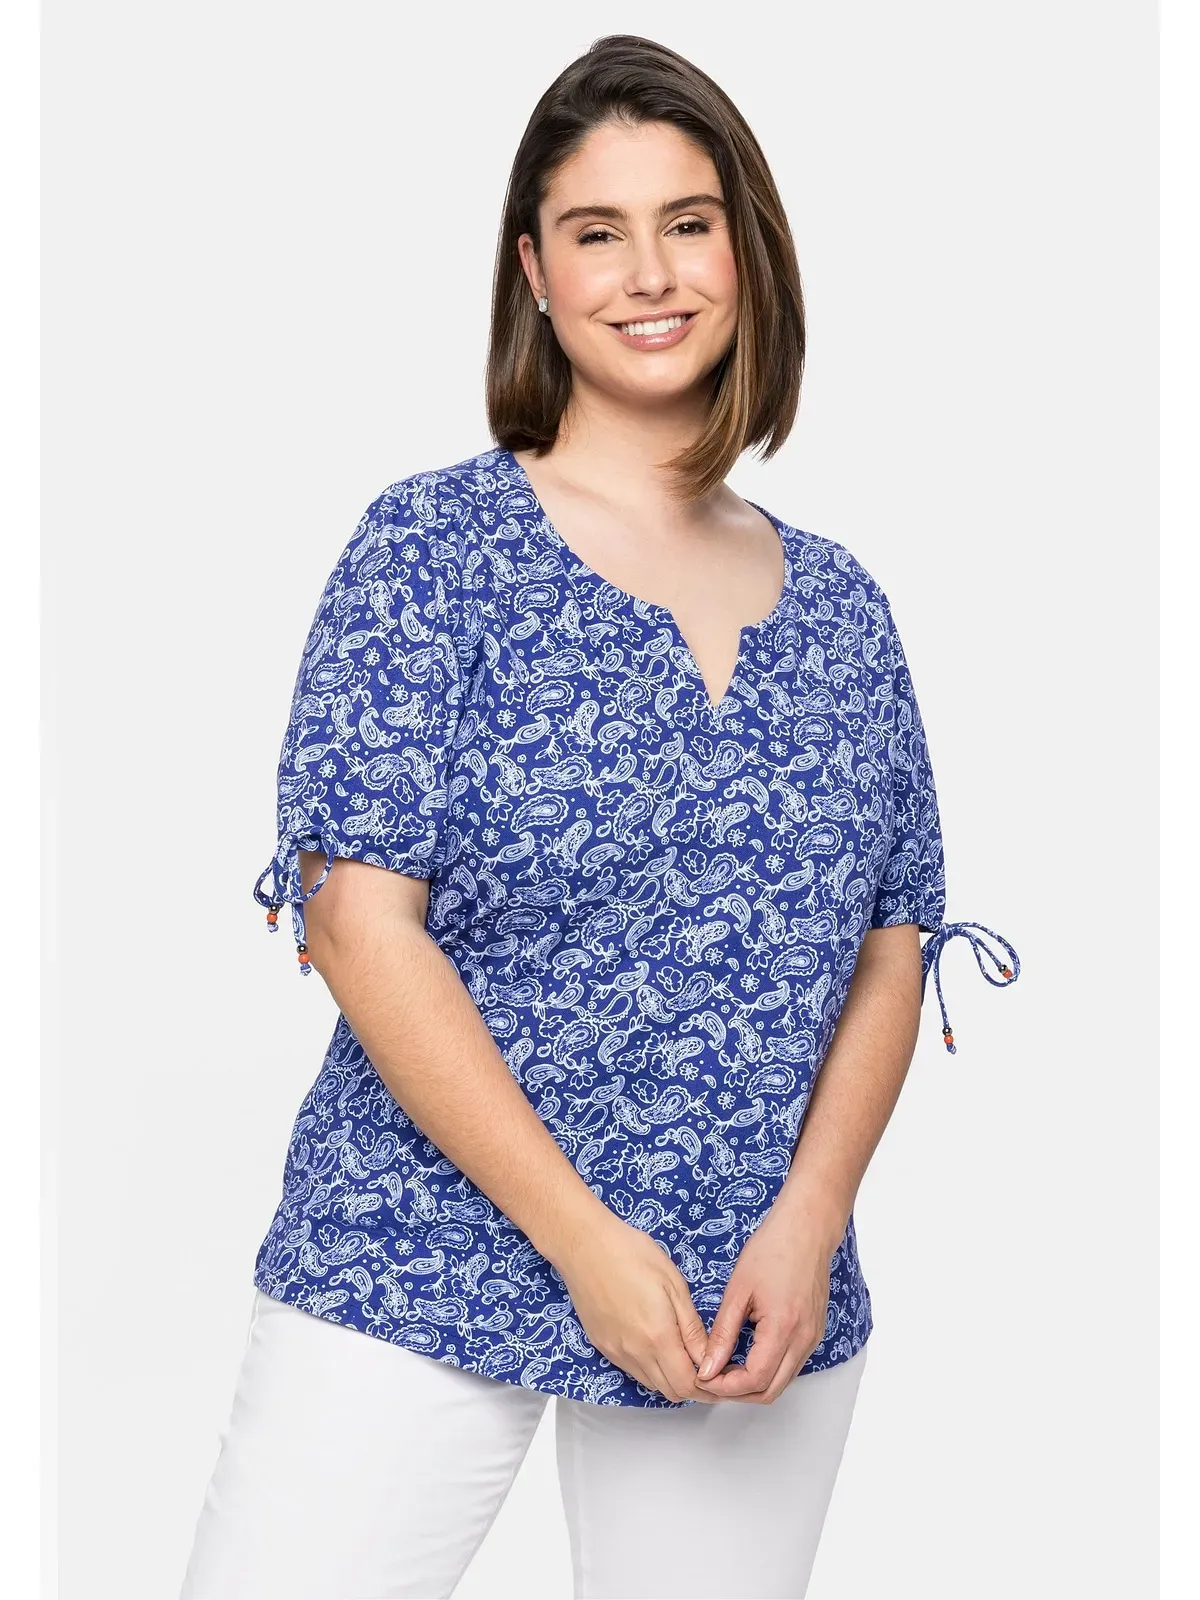 T-Shirt SHEEGO "Große Größen" Gr. 48/50, blau (royalblau) Damen Shirts Jersey mit Paisleydruck und Bindeband am Arm